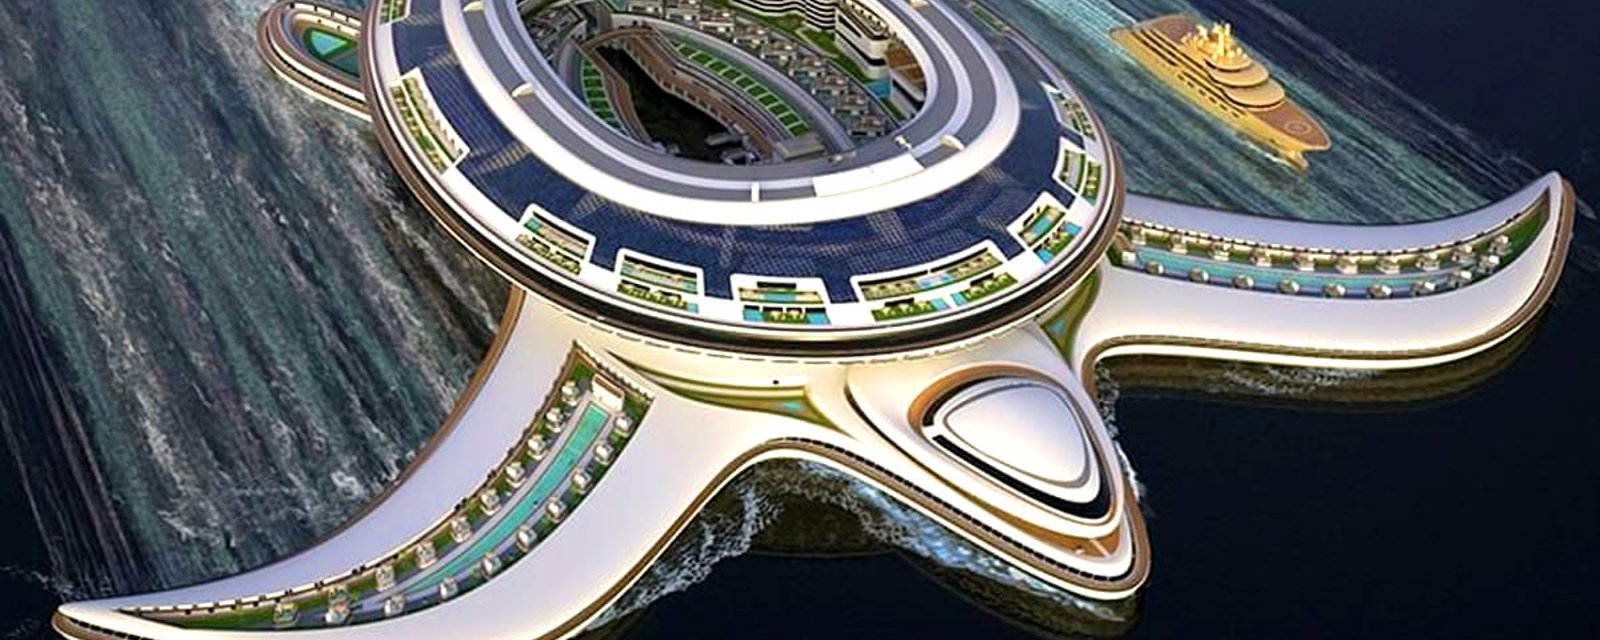 Un projet titanesque: une ville flottante pouvant accueillir 60 000 personnes